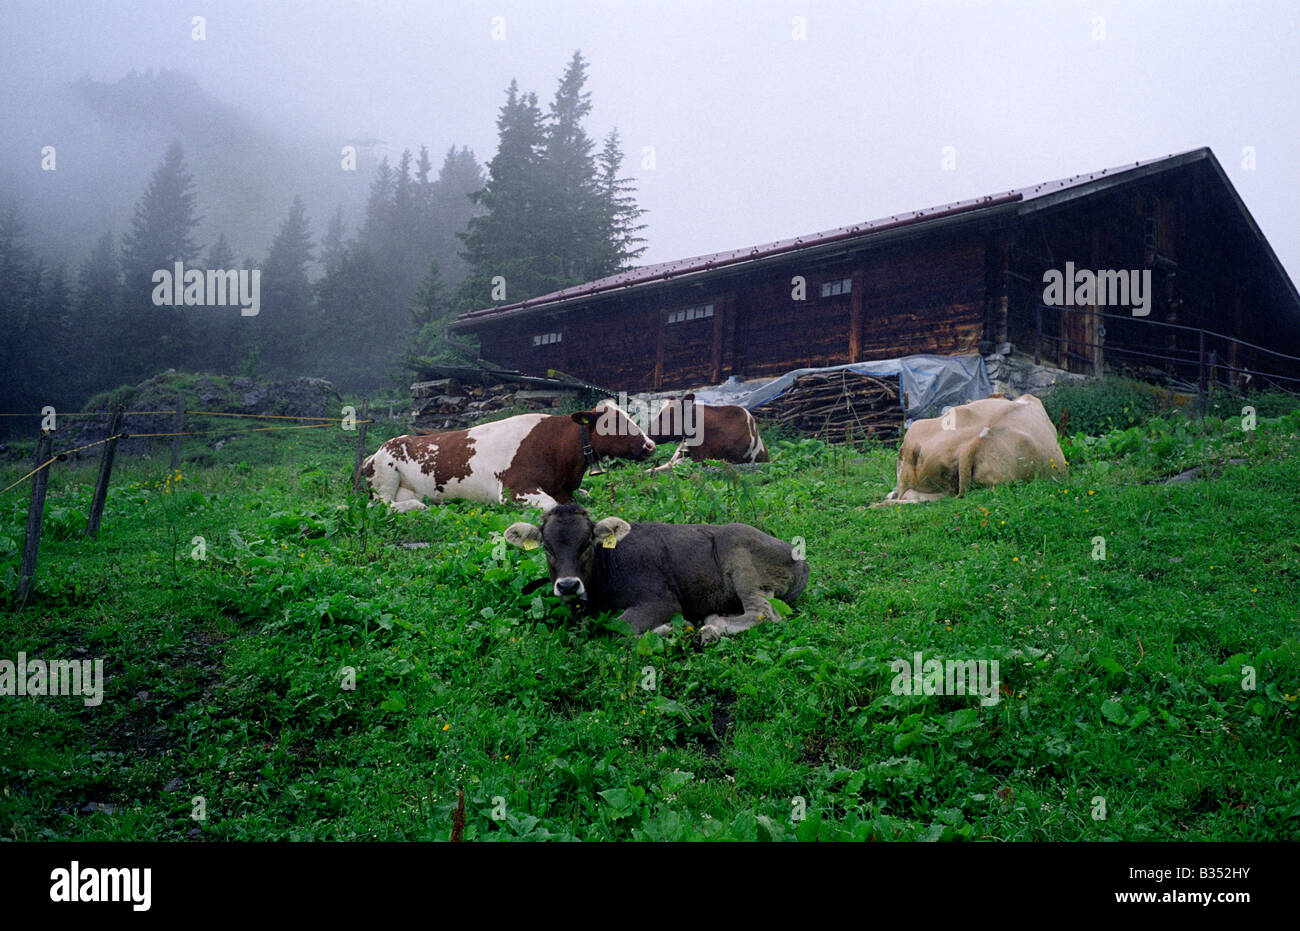 Le bétail laitier Suisse Berner Oberland Oberland bernois Alpine meadow field Banque D'Images